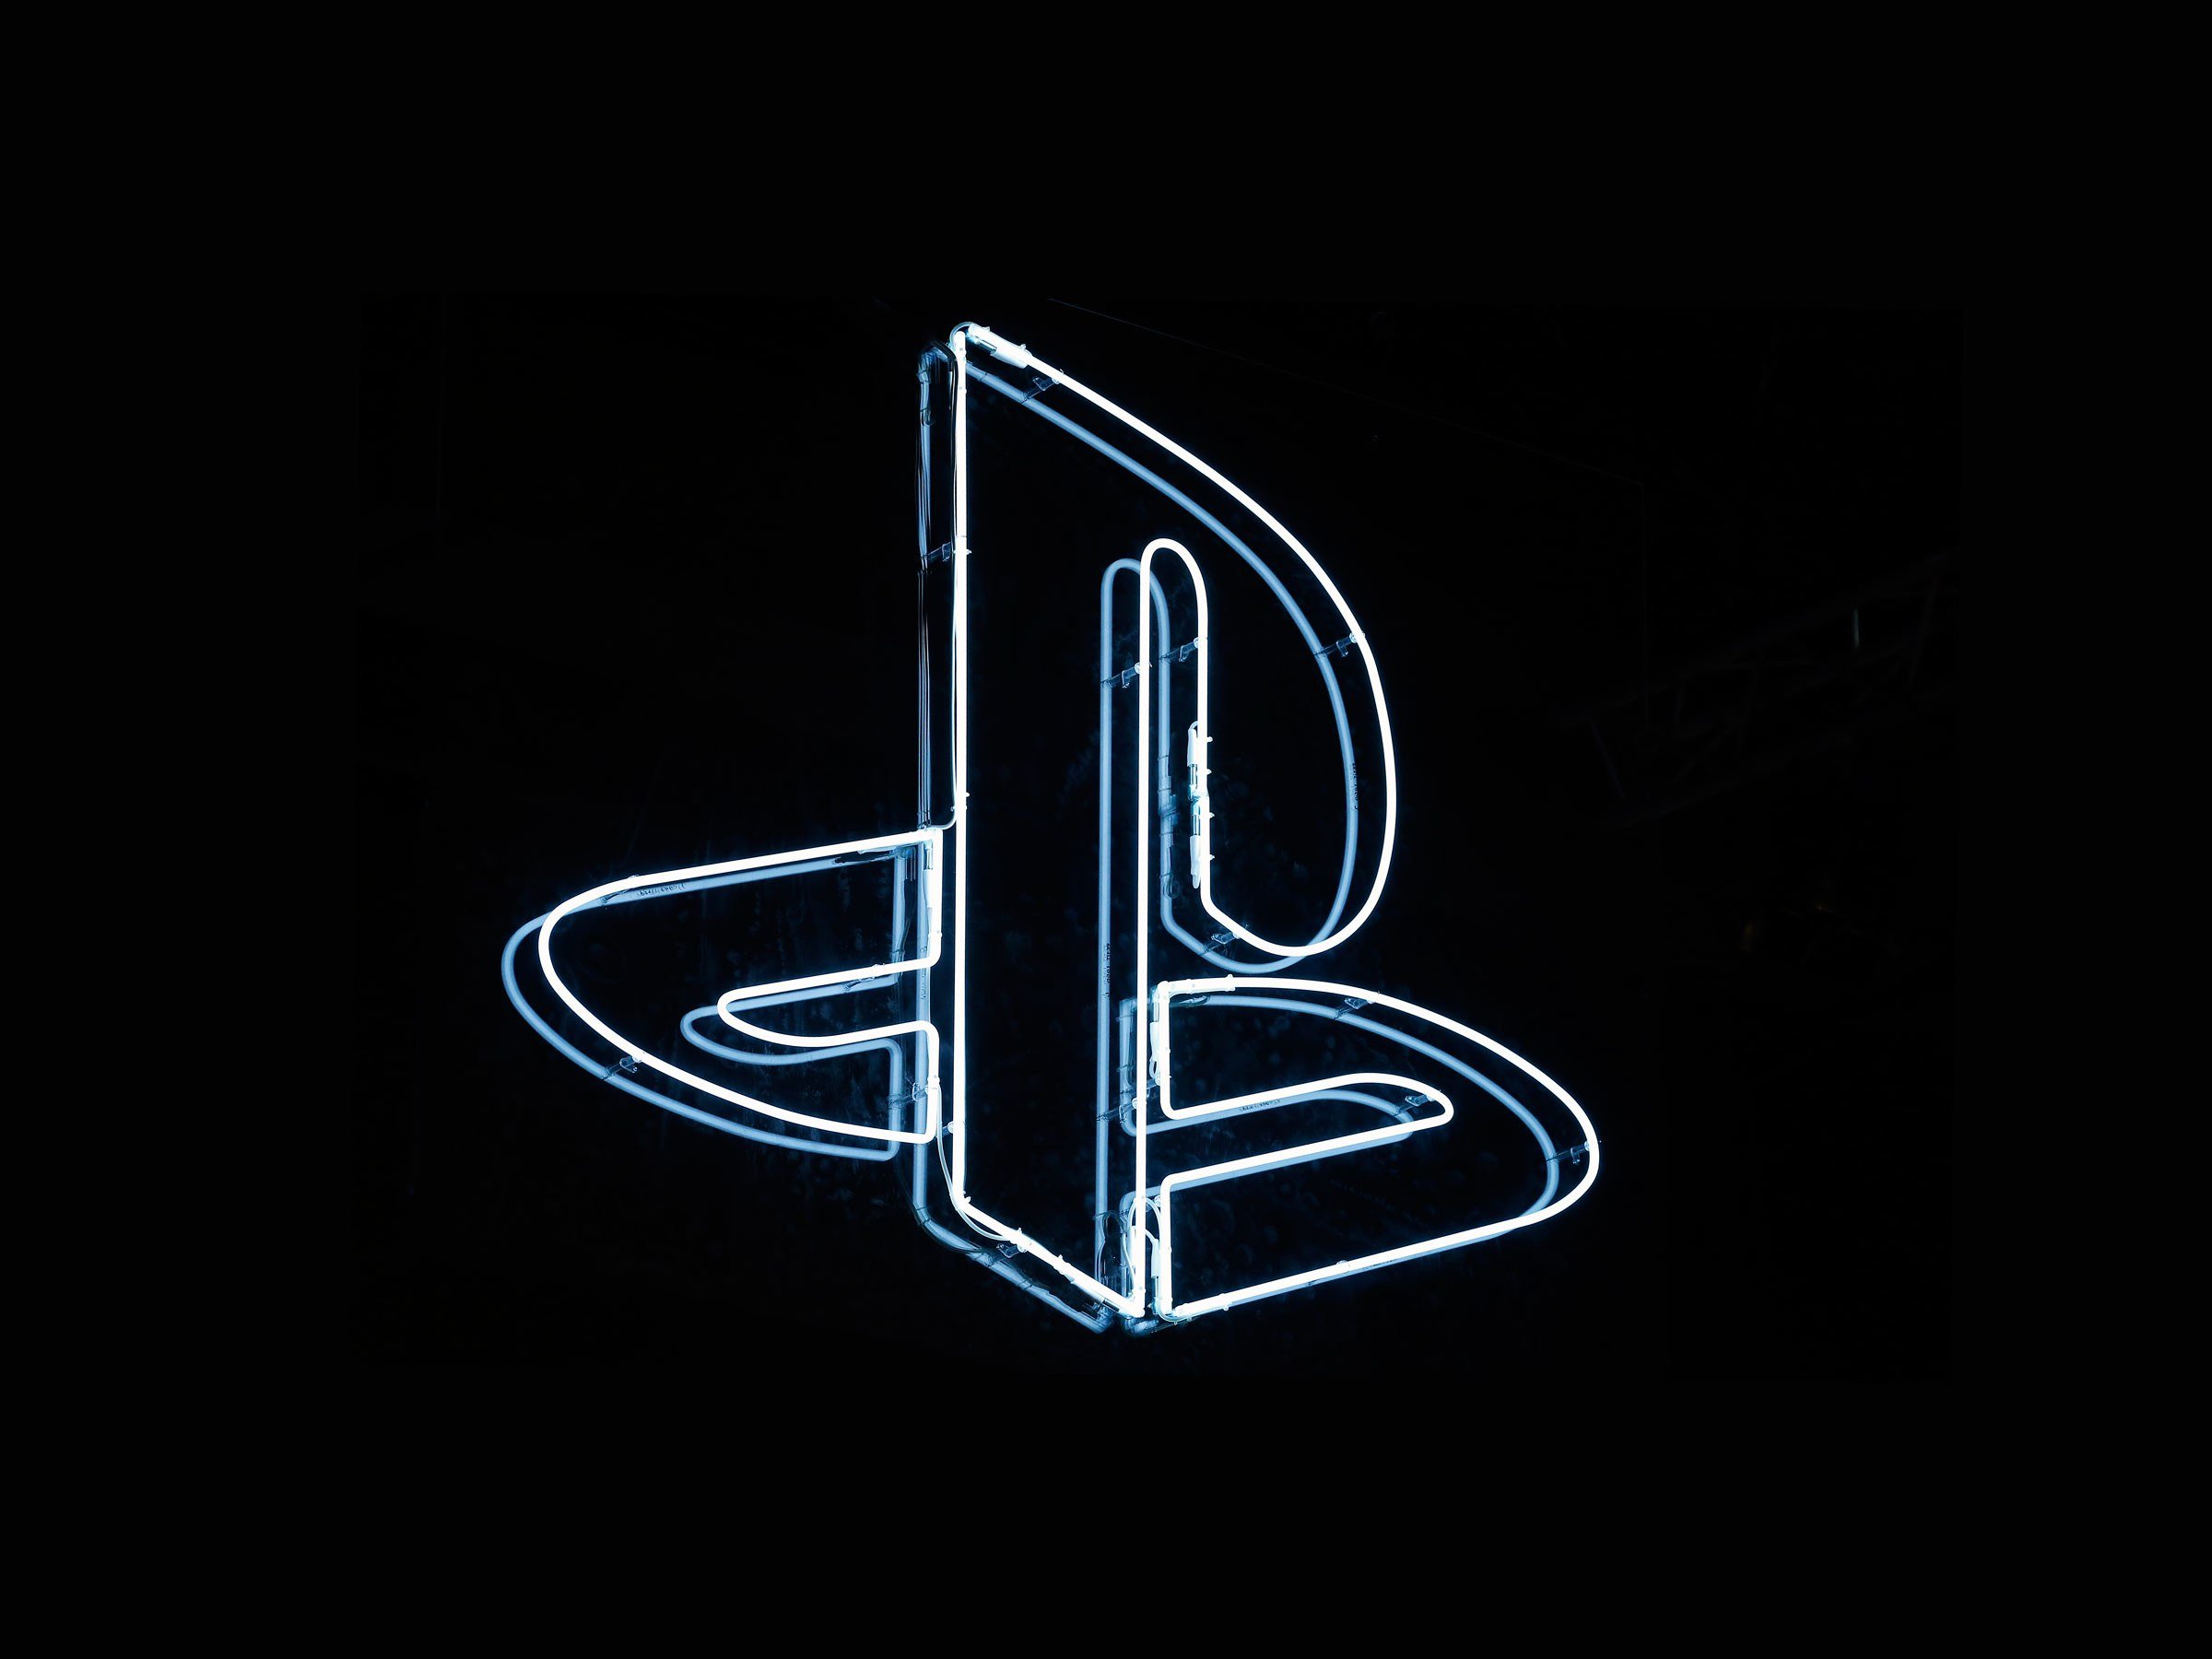 Bagong Sony PlayStation 5 'DualSense' Controller na Nabunyag, Paano Naghahambing ang PS5 Gamepad Sa Microsoft Xbox Series X Controller